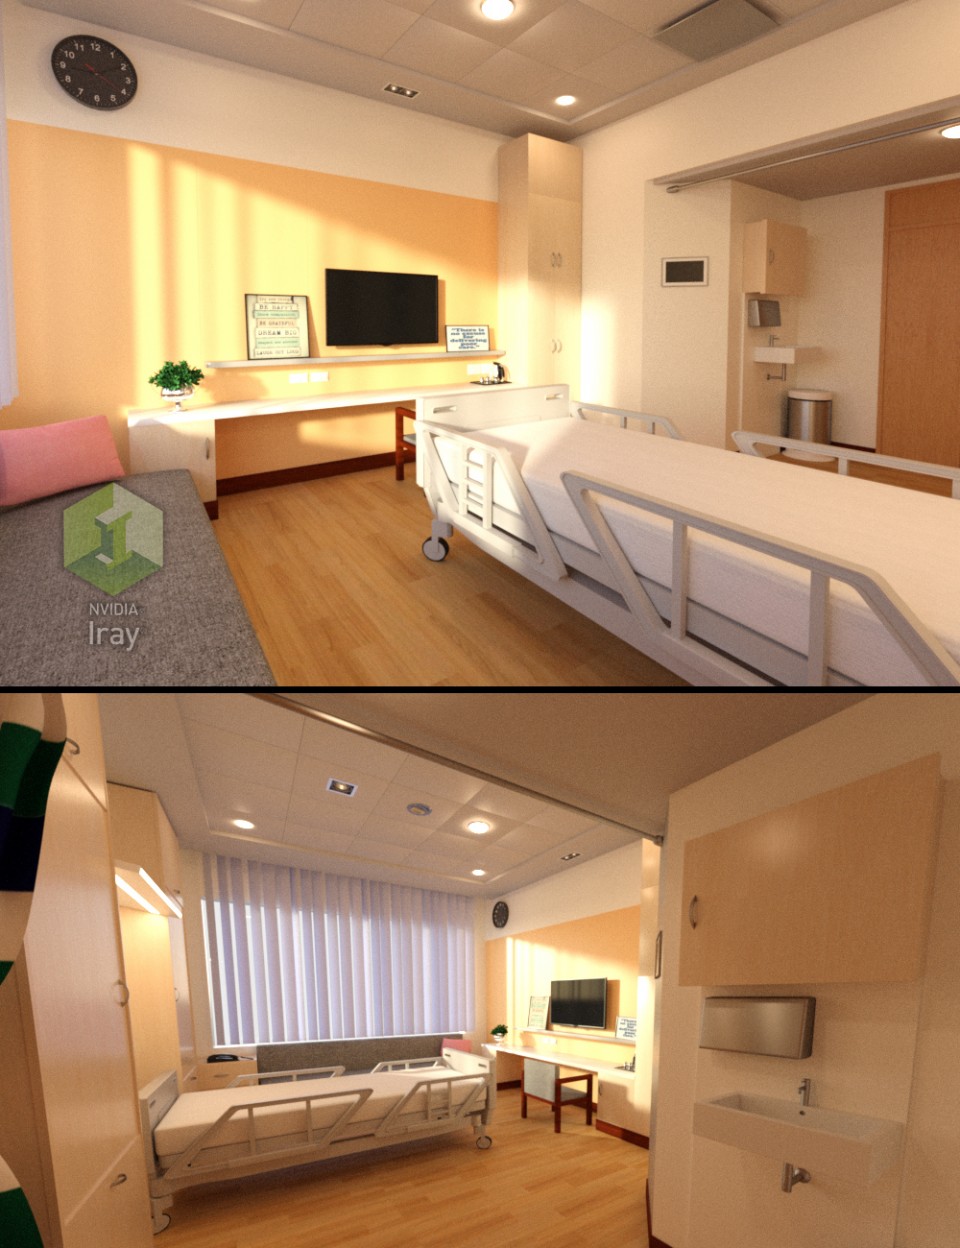 医院卧室 3D场景道具模型素材 maya 3dmax c4d ue4 unity游戏